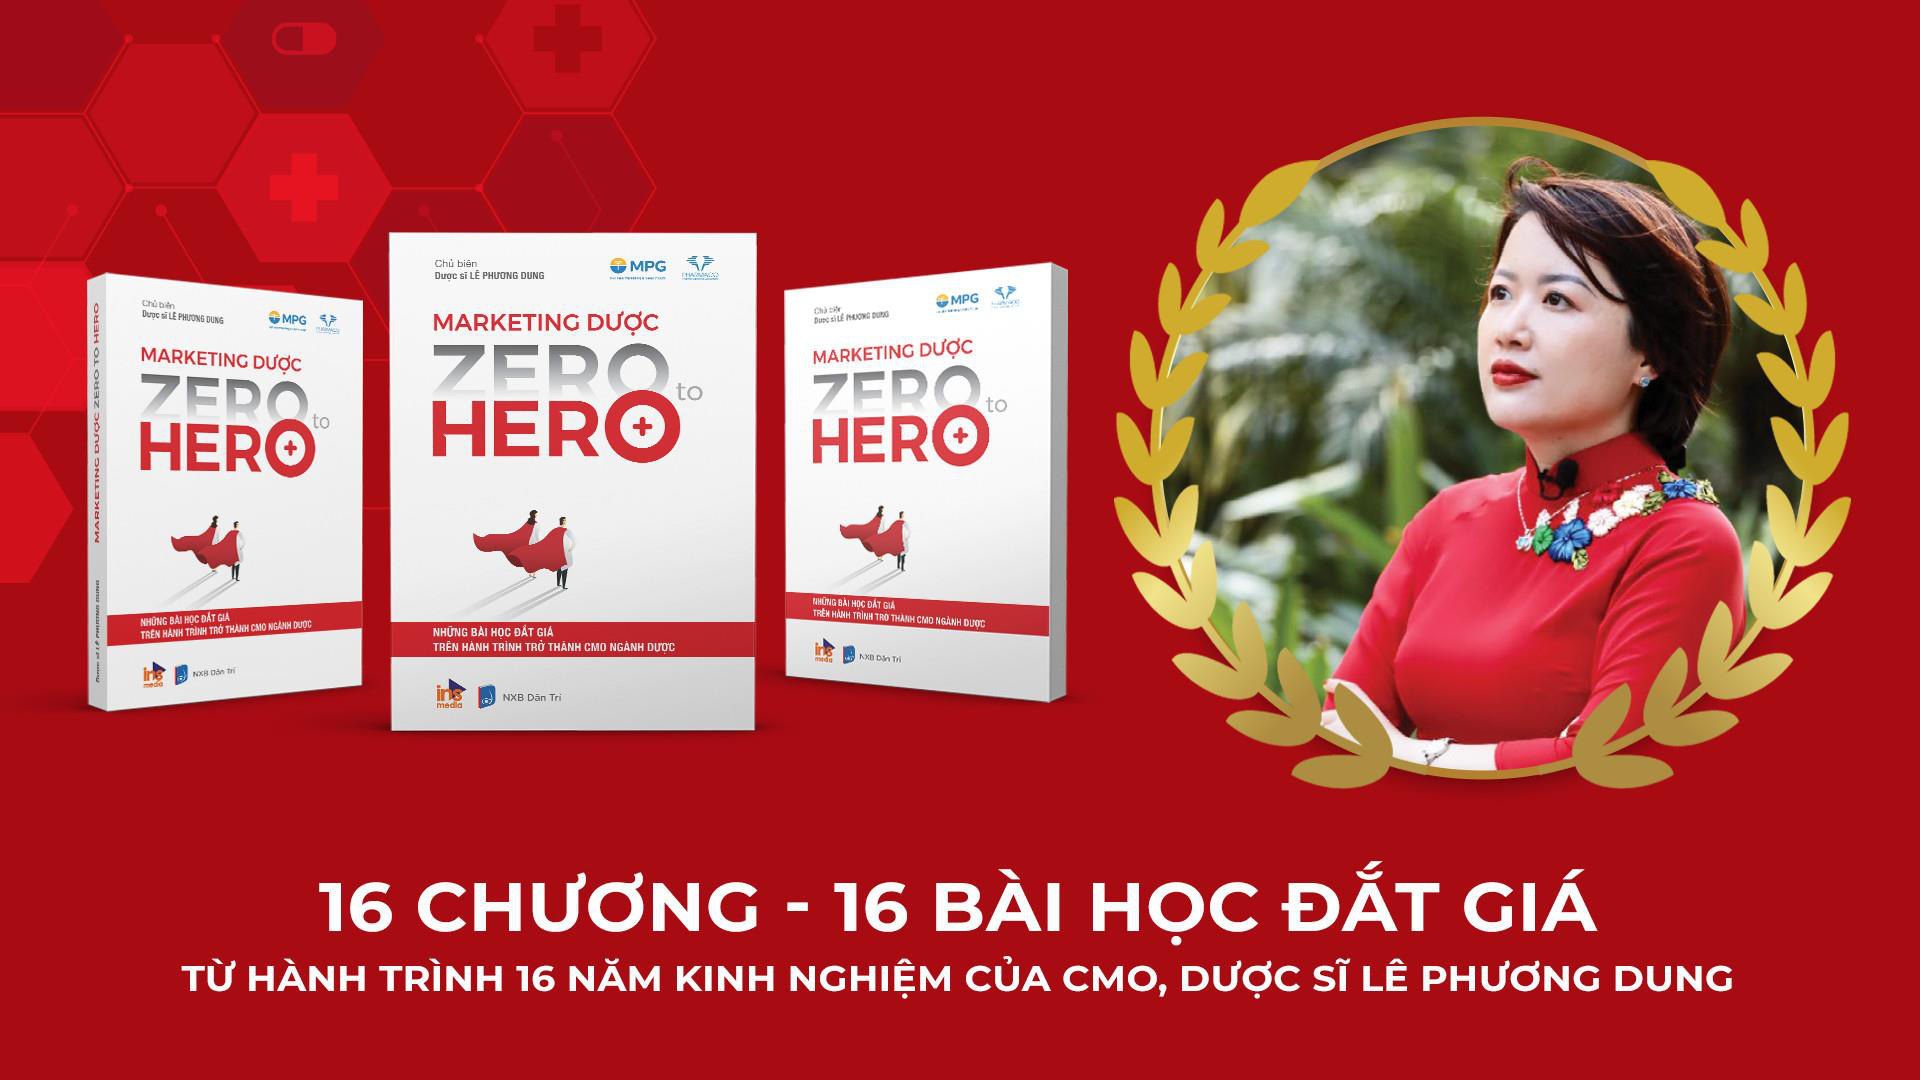 CEO Lê Phương Dung chắp bút cho hành trình từ “Zero đến Hero” của marketer Dược - Ảnh 2.